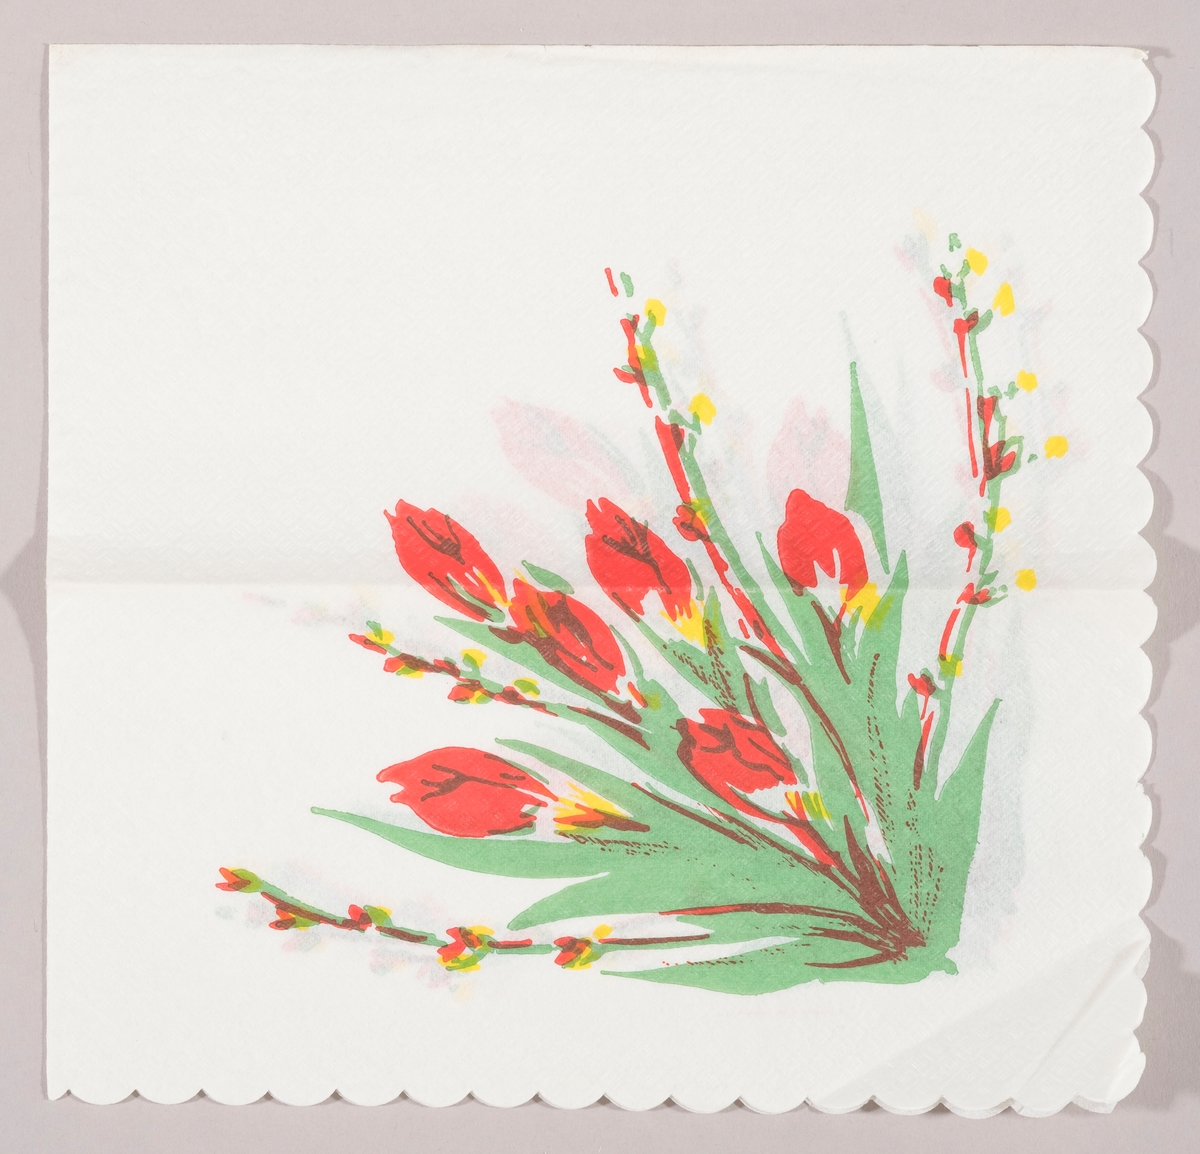 En bukett med røde tulipaner og grener med "gåsunger"